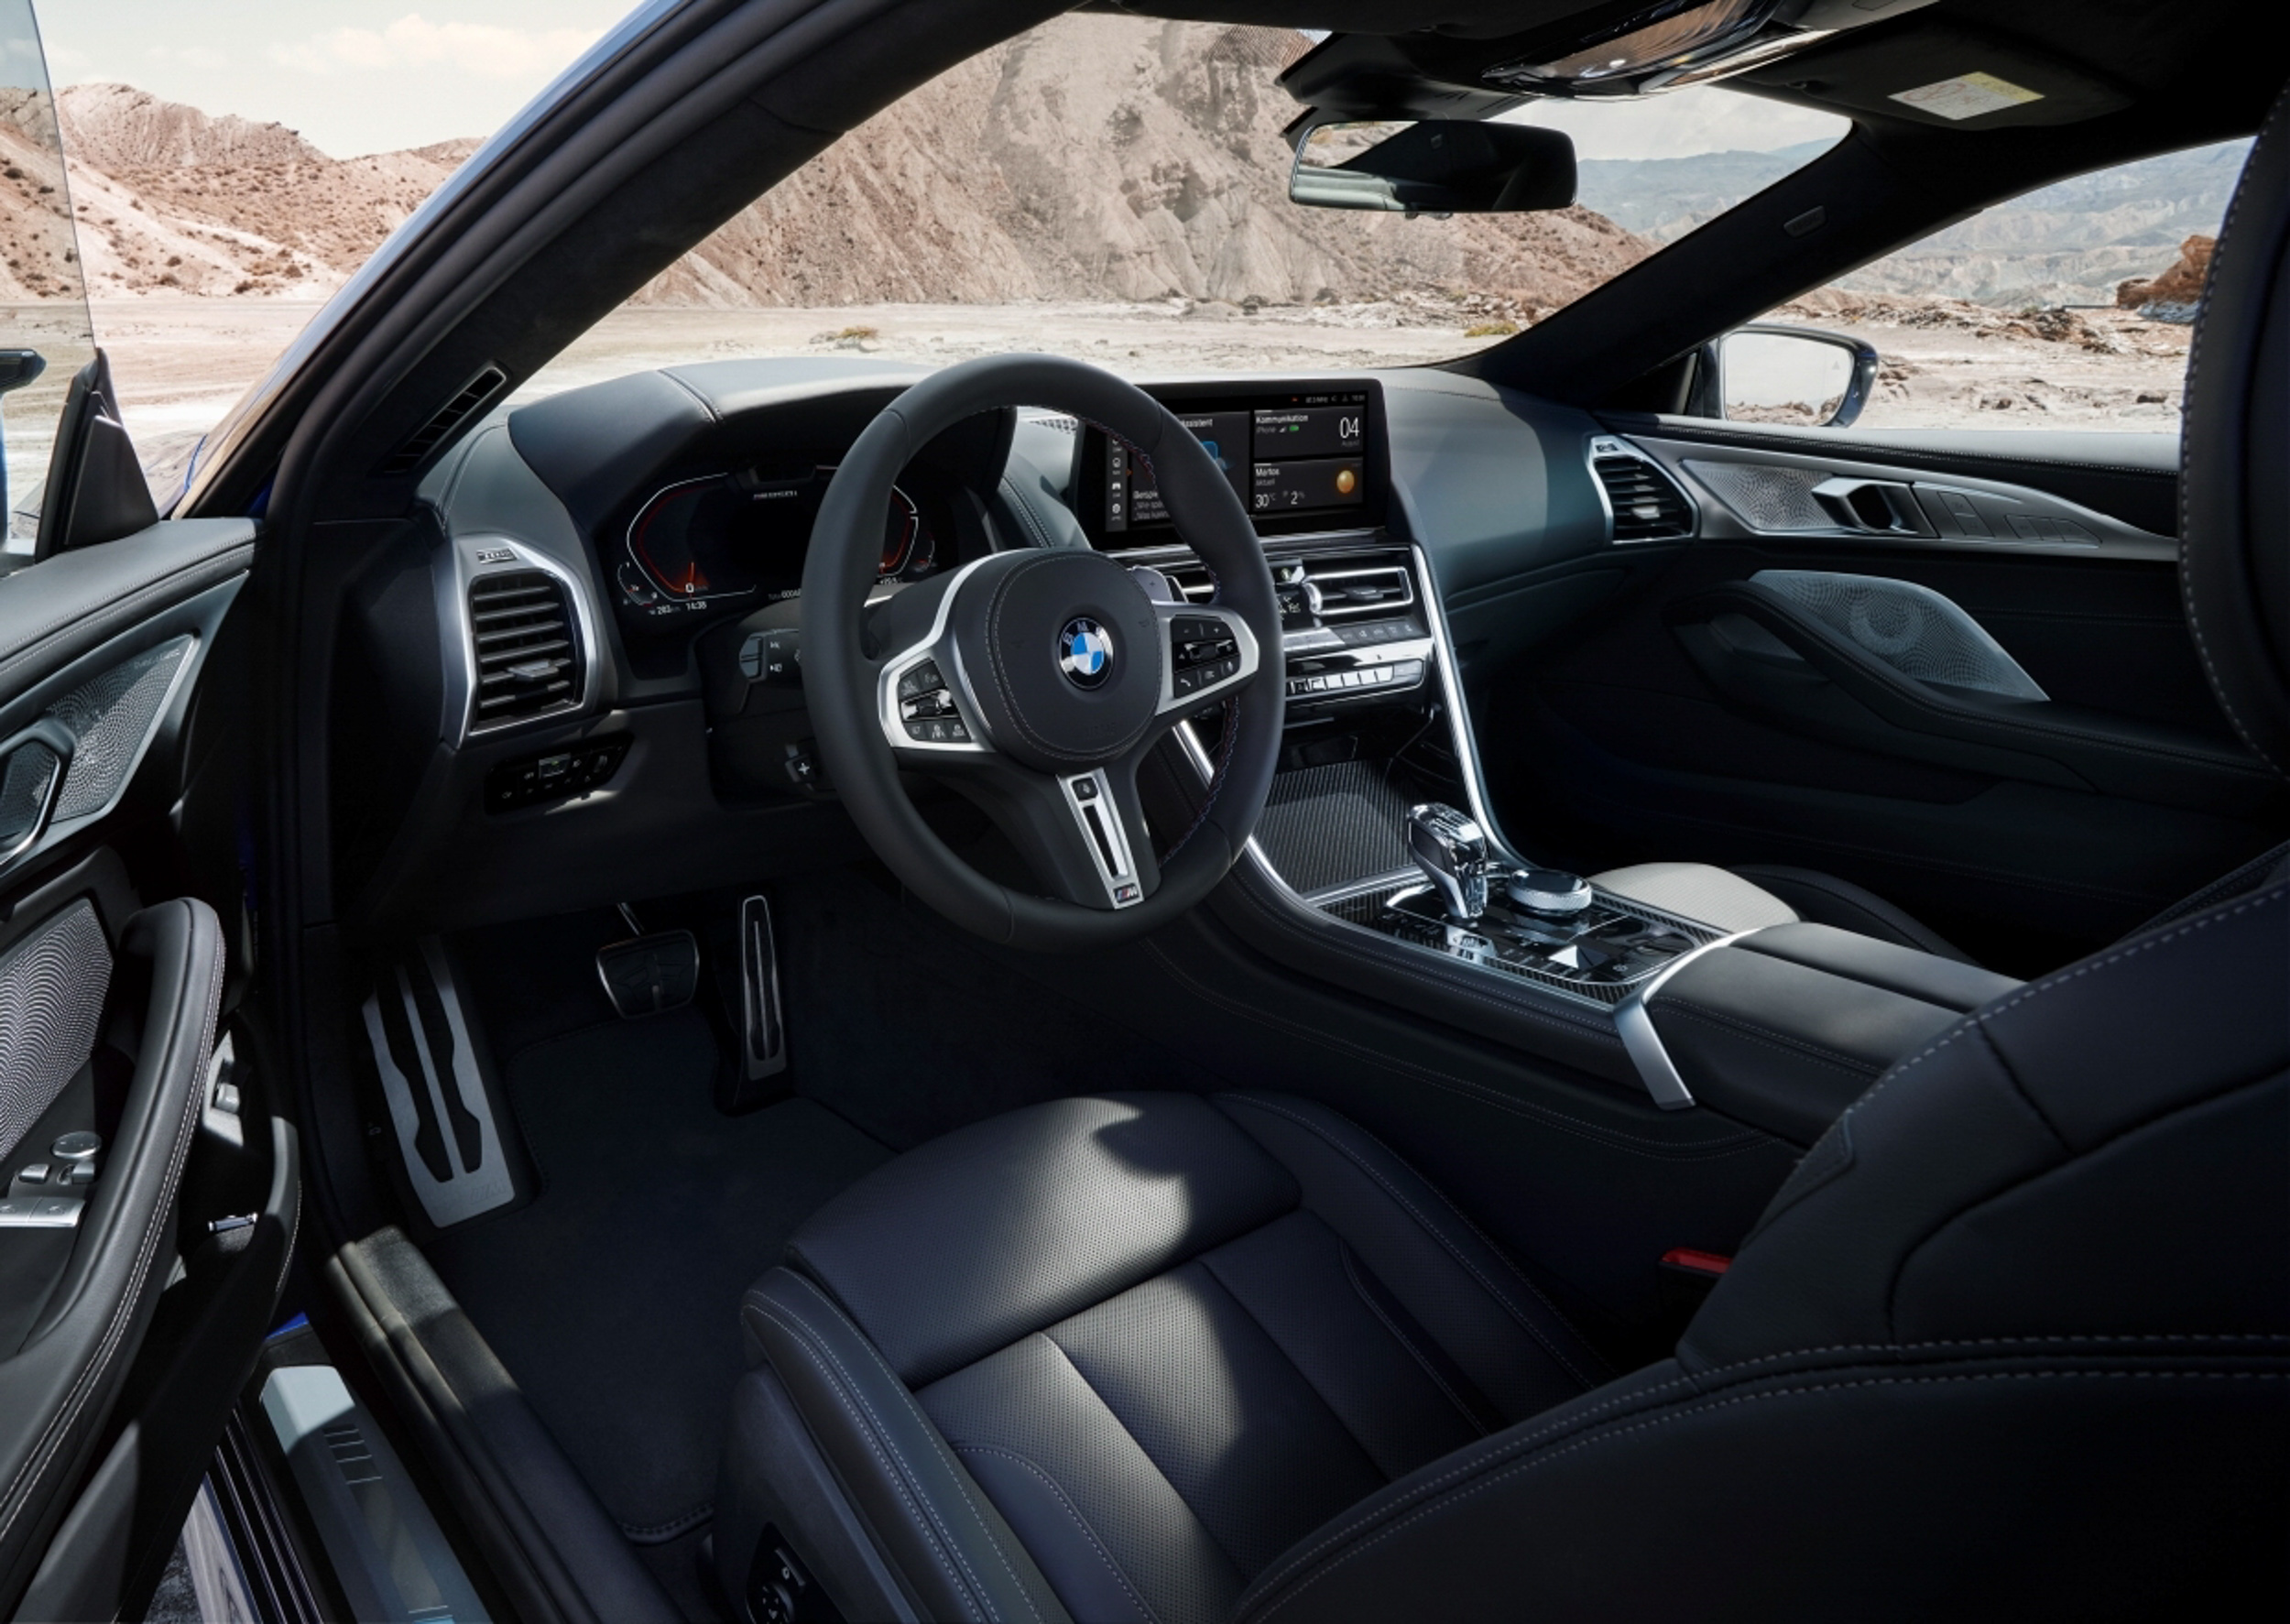 採用 BMW Individual Merino 頂級真皮雙前座跑車座椅、M 多功能真皮方向盤含換檔撥片、Walknappa 真皮儀錶台包覆與頂級水晶中控套件。